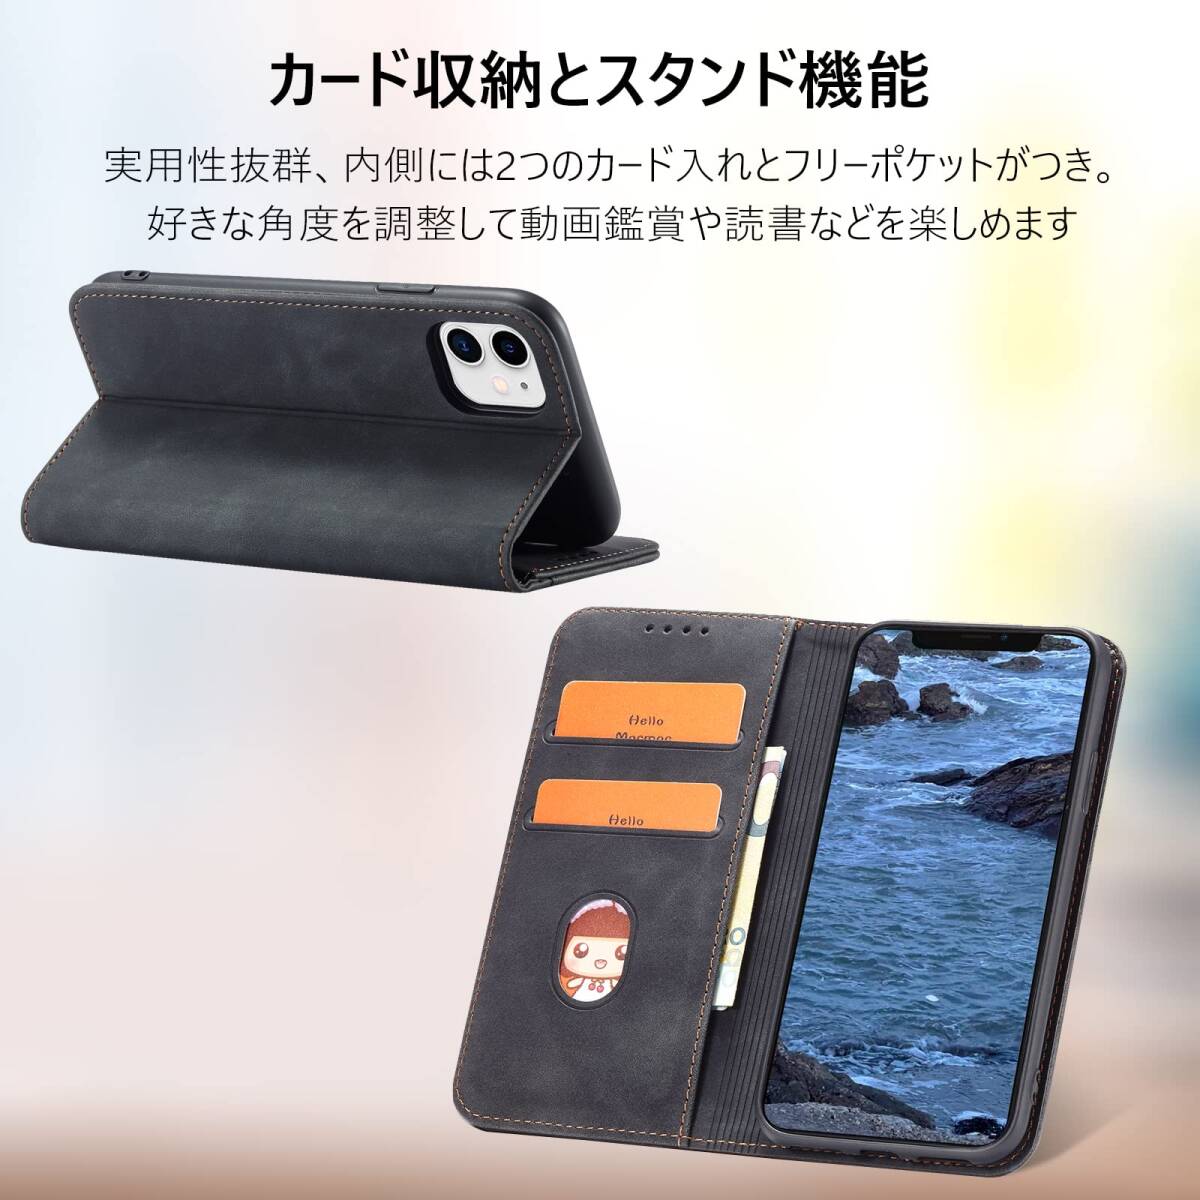 【特価商品】KWATUNG iphone11手帳型ケース iphone11ケース手帳型 スマホケース おしゃれ シンプル 肌触り良_画像4